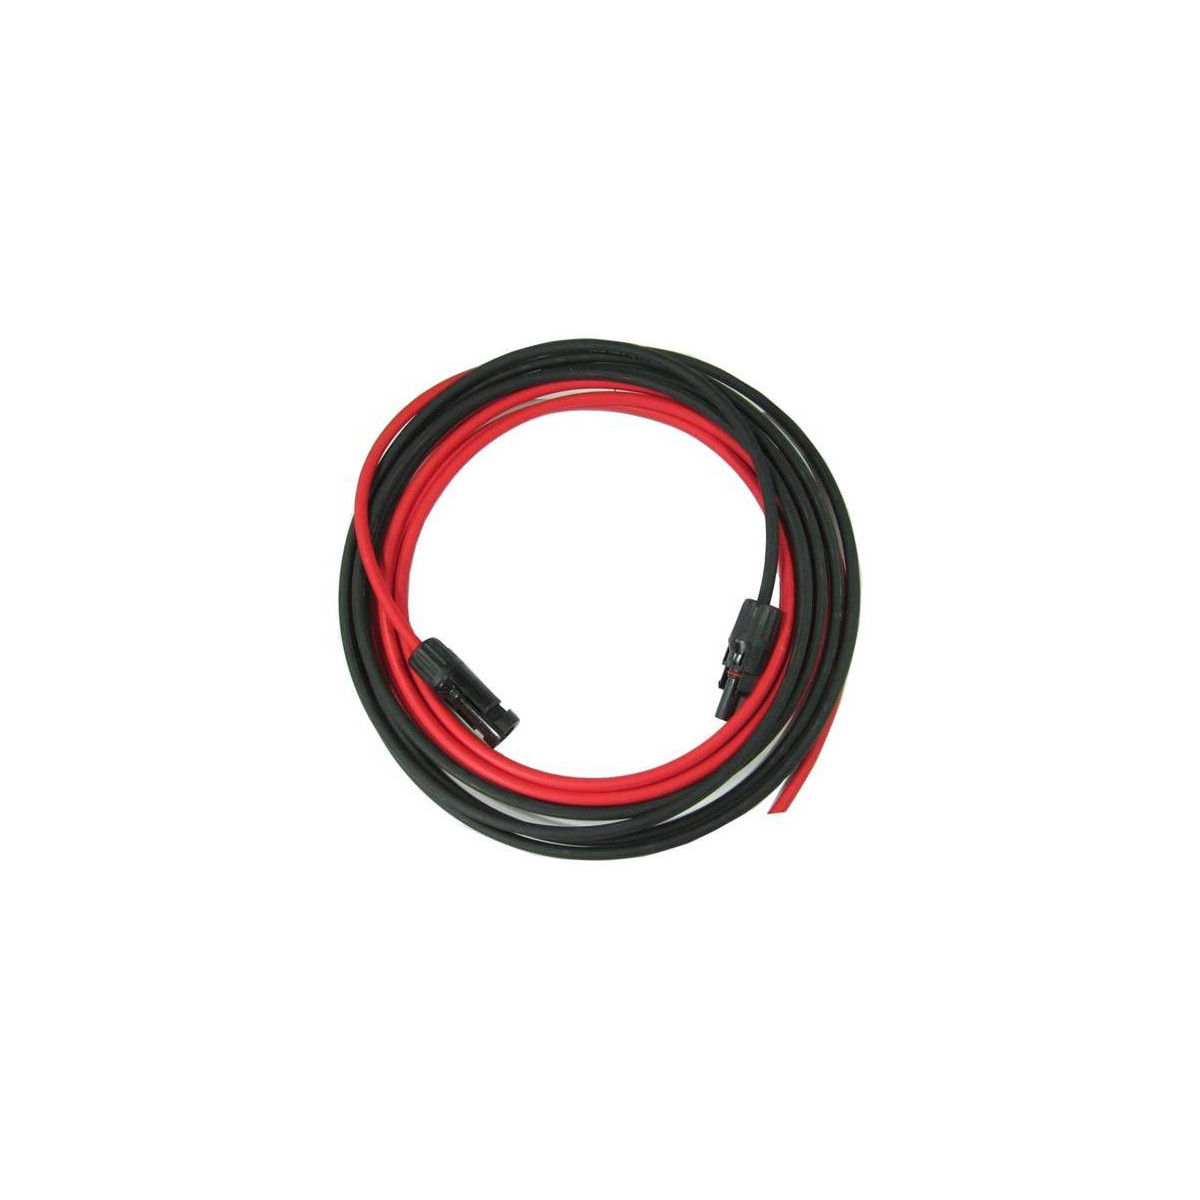 More about Solární kabel 4mm2, červený+černý s konektory MC4, 3m